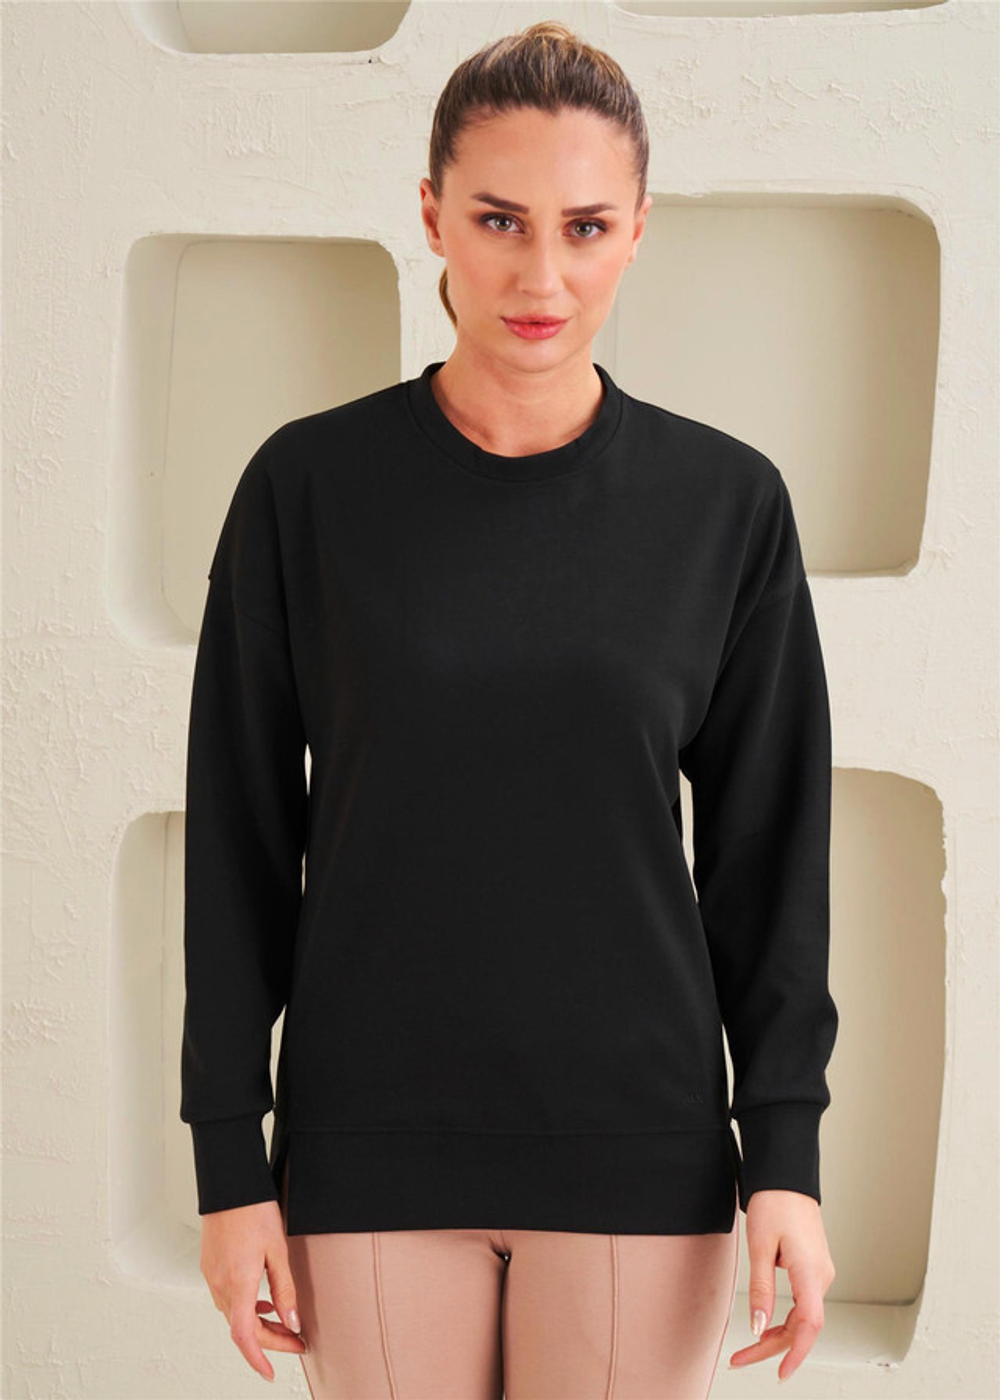 Женская футболка с круглым вырезом - Сочетание базового стиля и комфорта - 41517